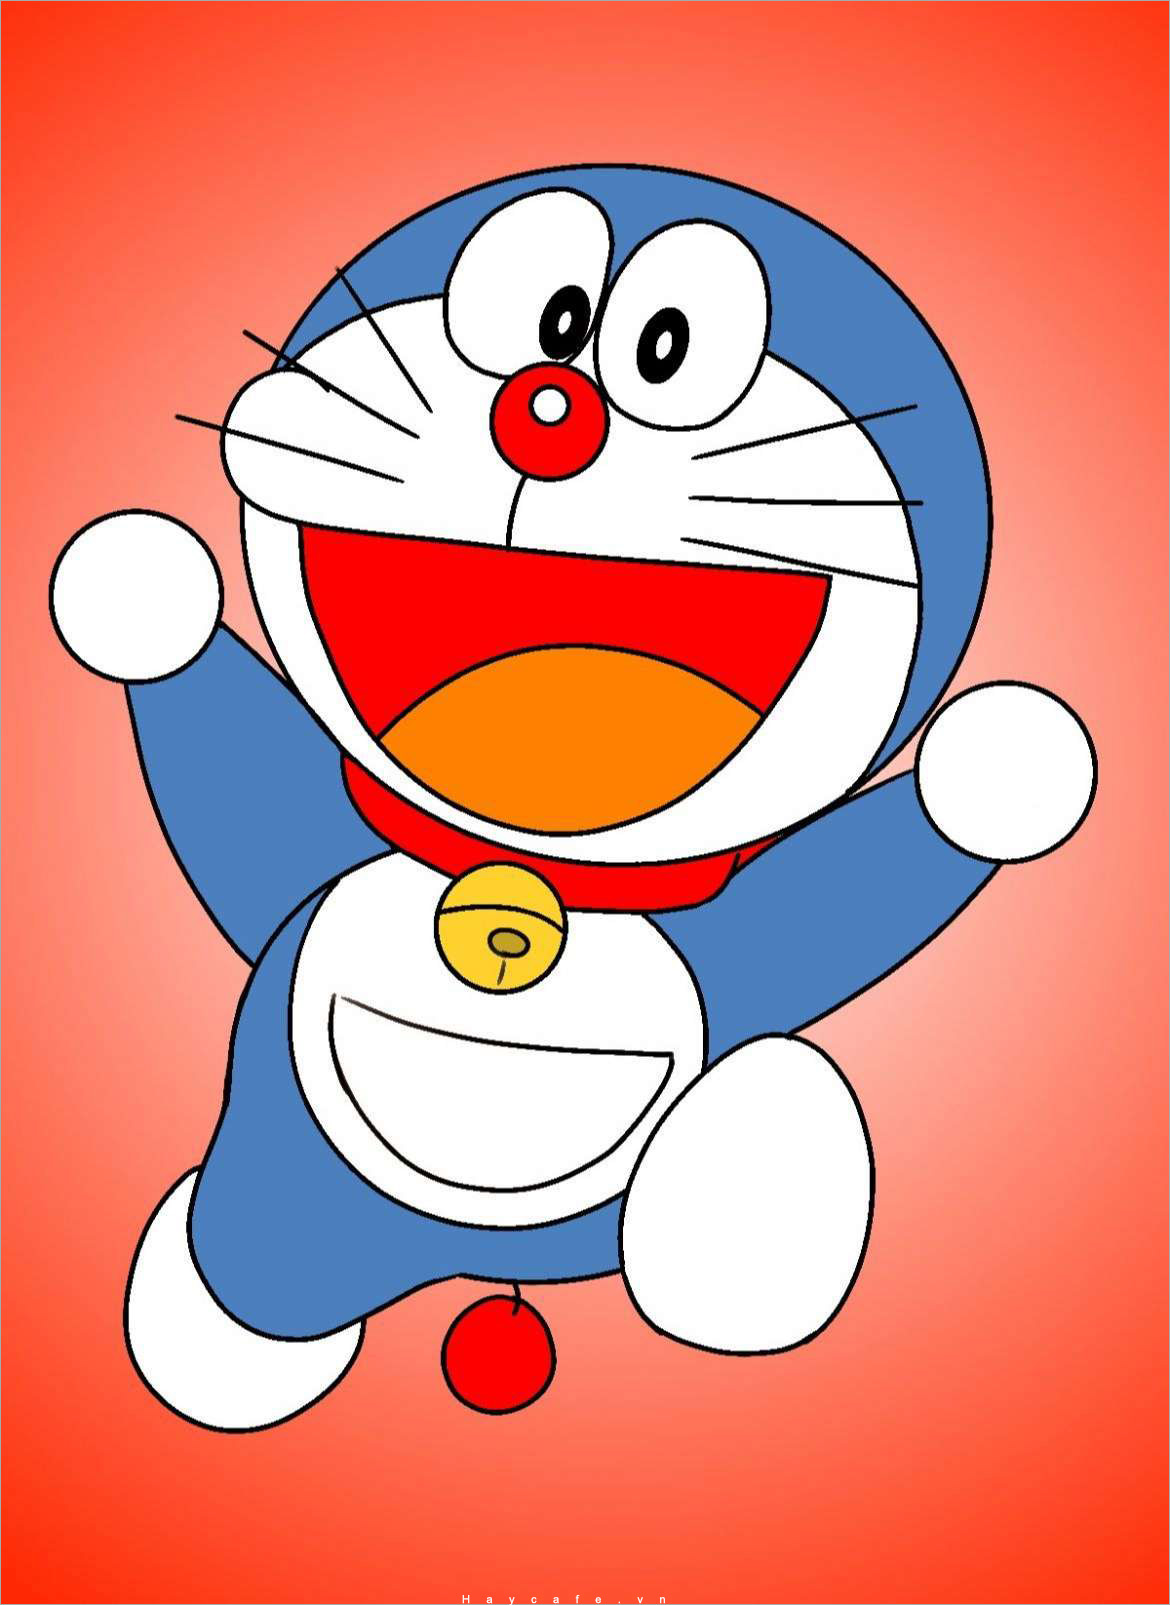 Vẽ Doraemon: Vẽ Doraemon là hoạt động mang lại niềm vui, trẻ thơ cho bất kỳ ai yêu thích nhân vật này. Với bút vẽ và giấy trắng tay, bạn có thể tạo ra những bức tranh Doraemon đầy màu sắc, dễ thương và đầy sự tình cảm. Hãy đến và thưởng thức những bức hình Doraemon mới mẻ và đáng yêu để làm say mê trái tim của bạn.